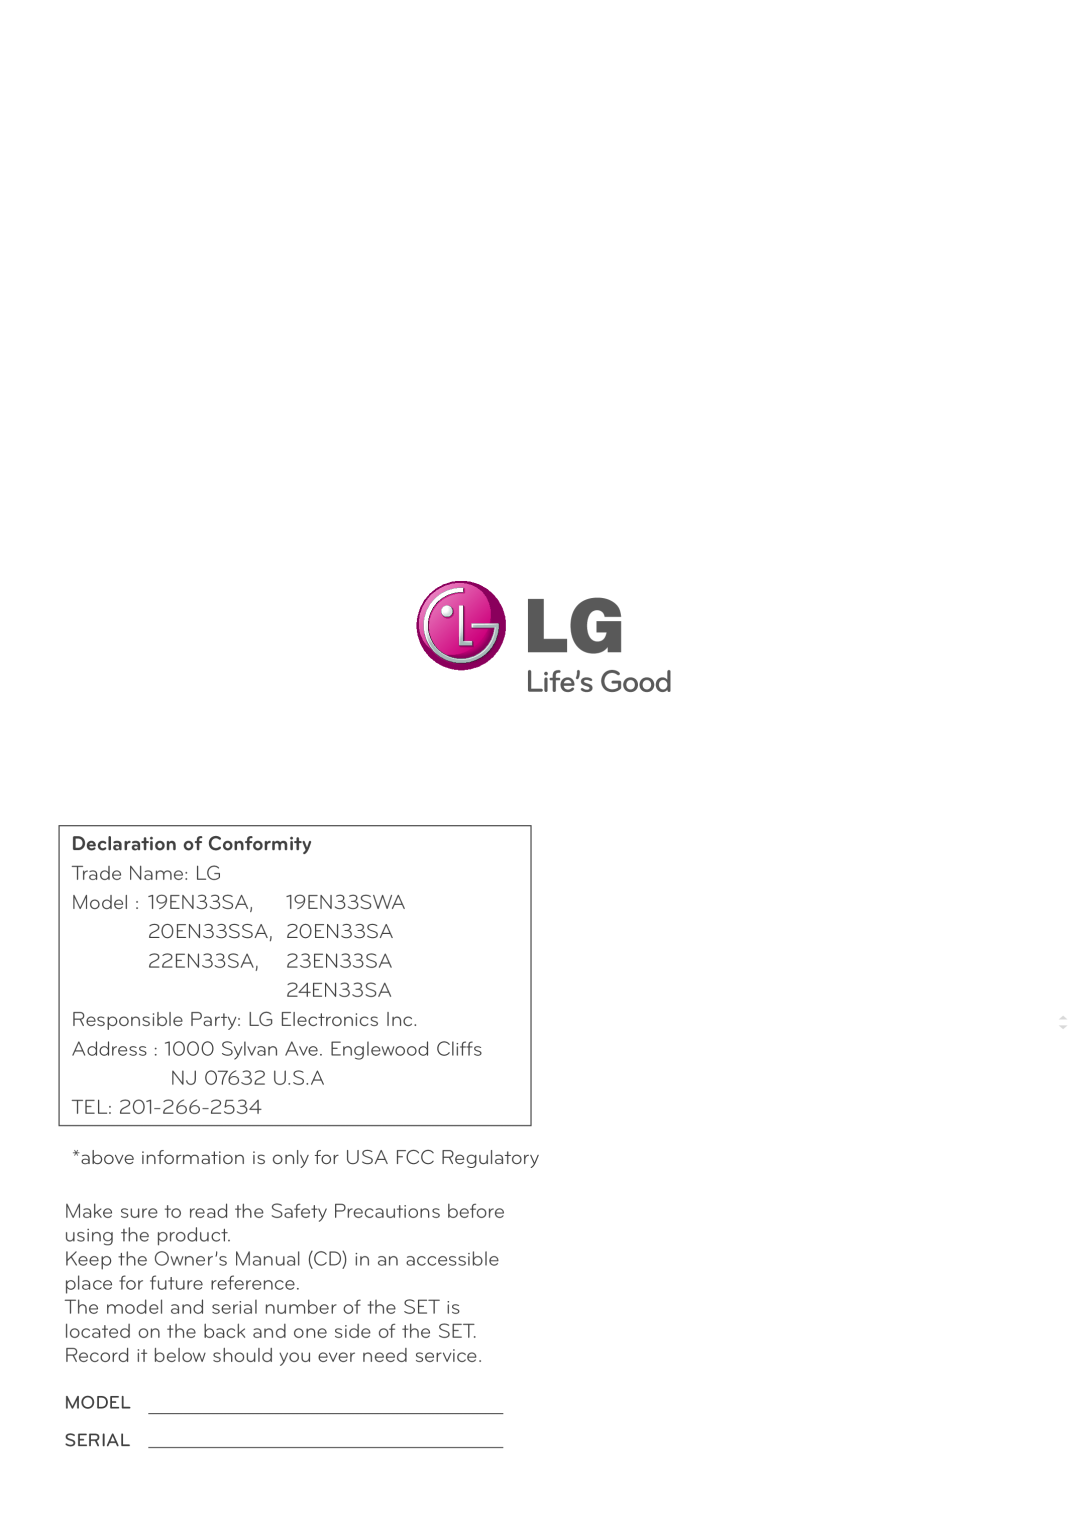 LG Electronics 24EN33S, 23EN33S, 22EN33S, 20EN33SS, 19EN33SW owner manual Declaration of Conformity 